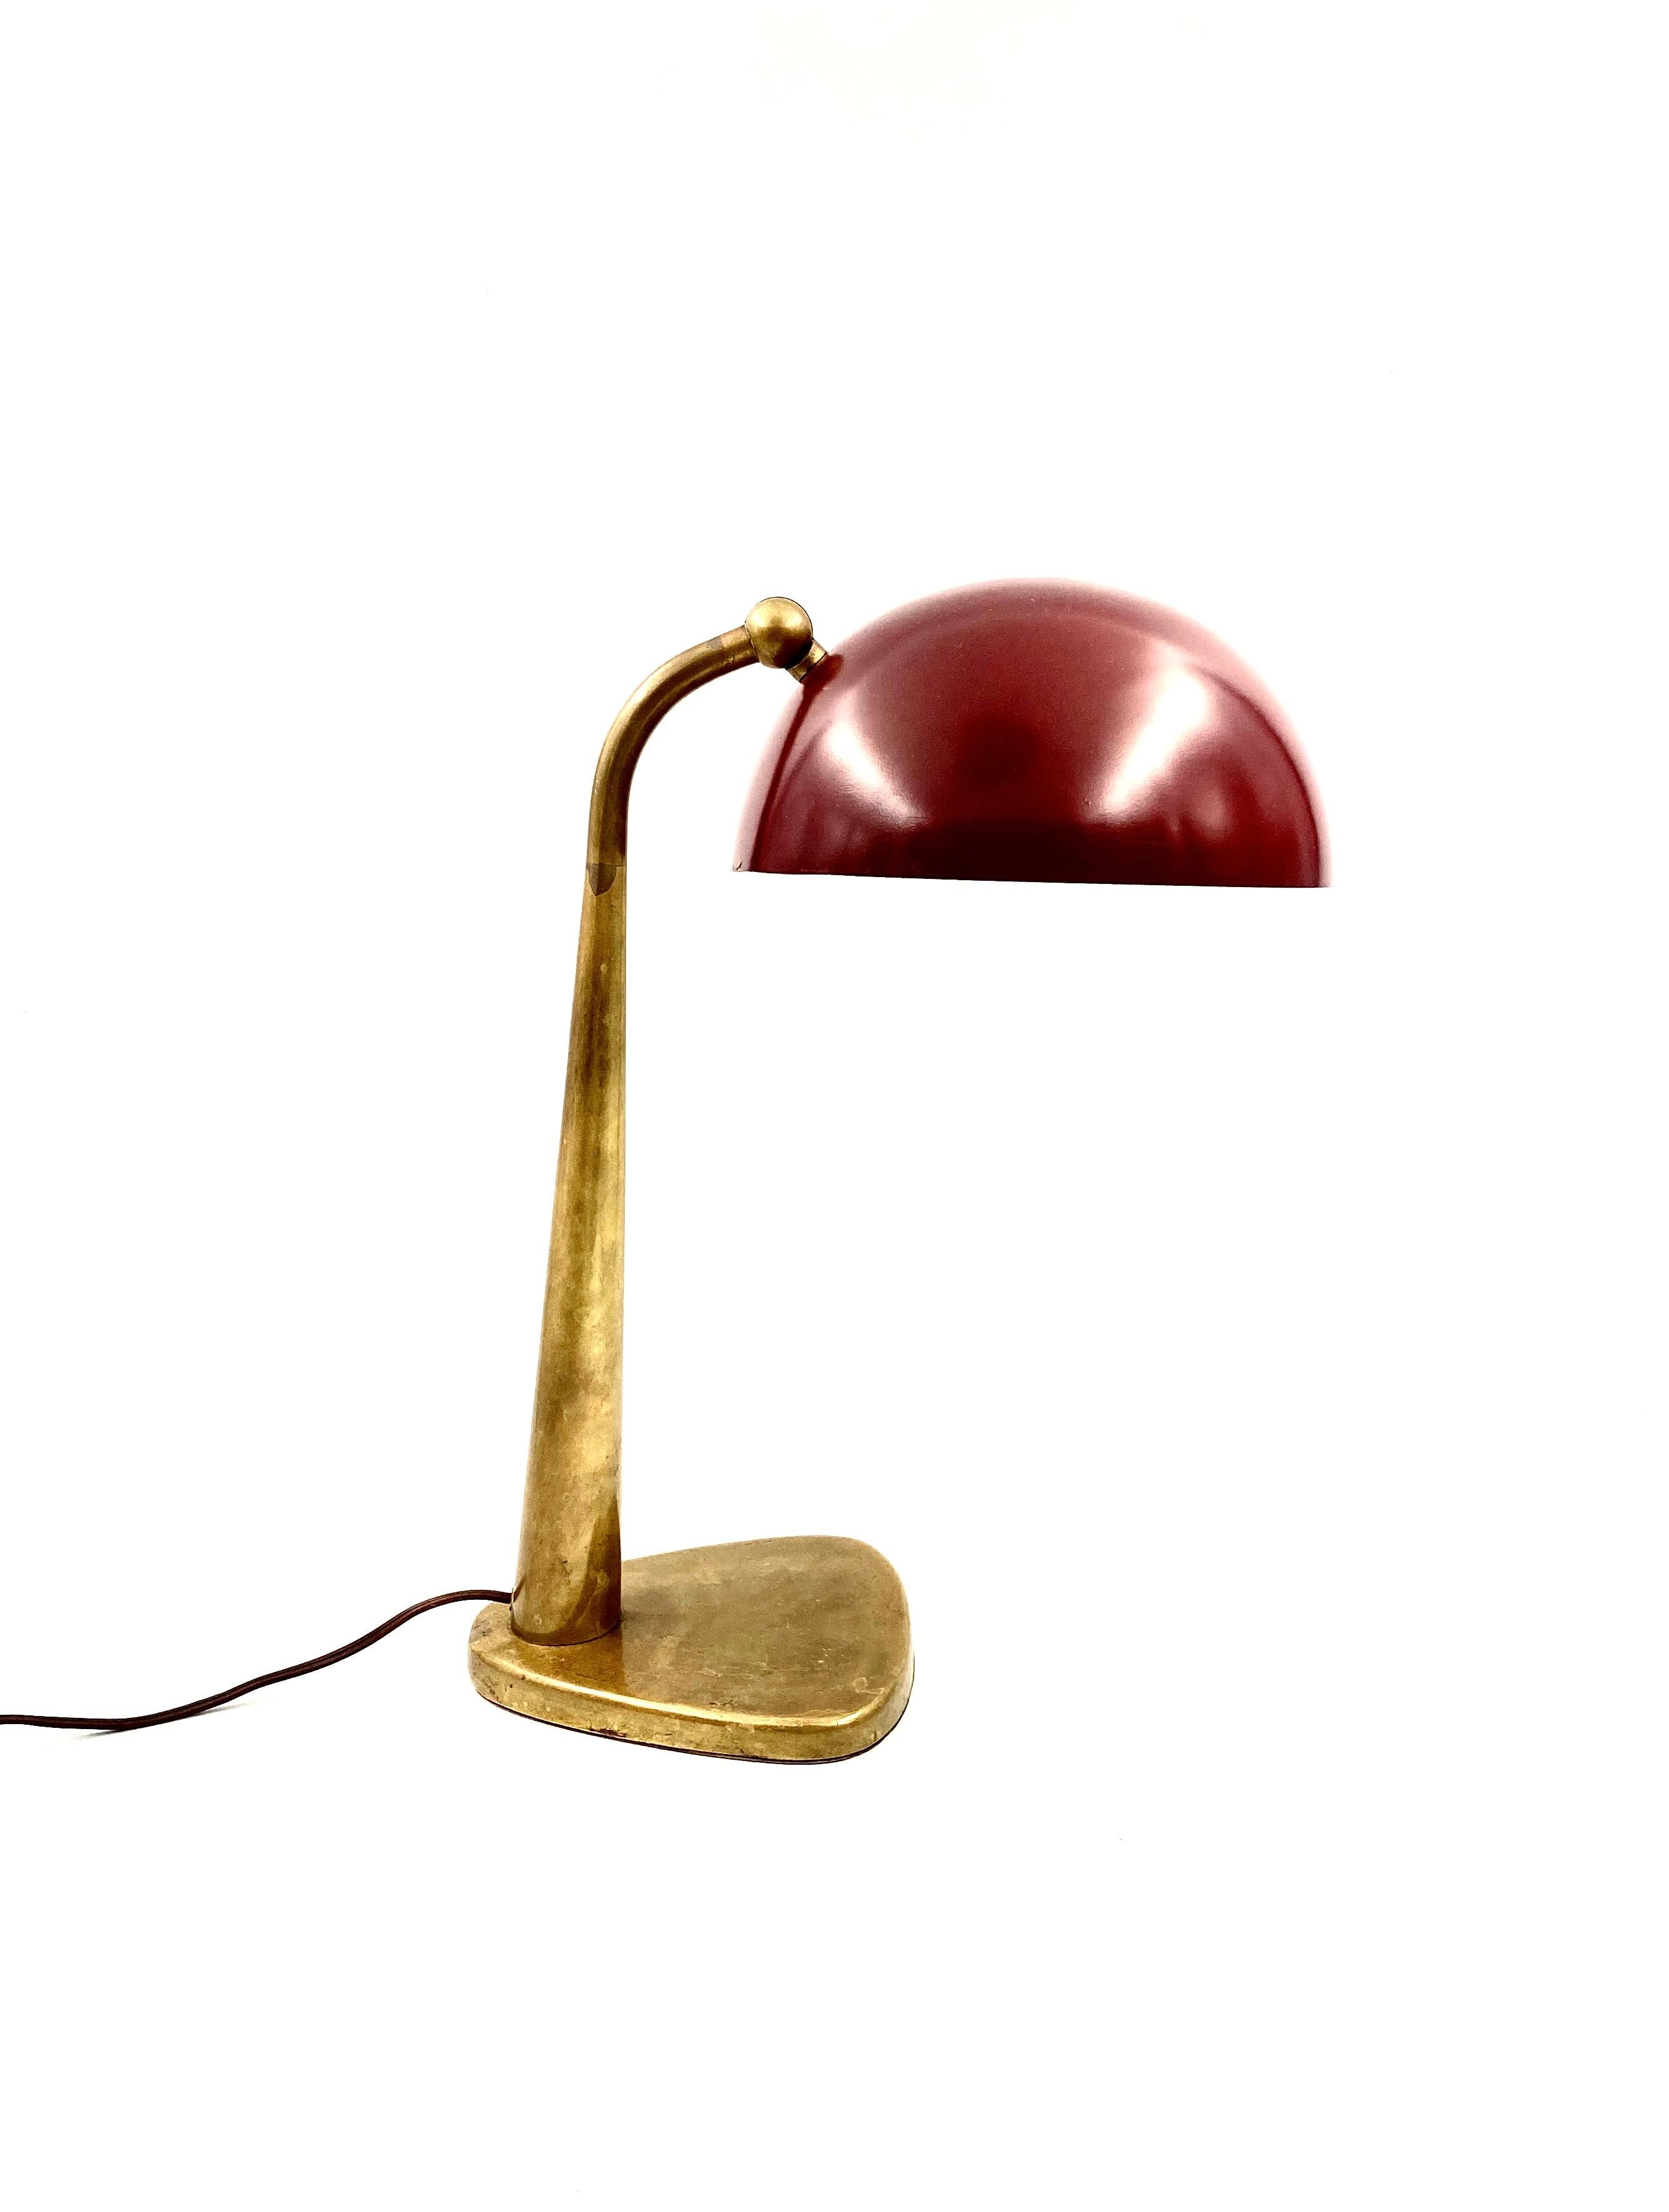 Stilnovo rare executive Desk / table lamp,

Stilnovo Milan, Italy, circa 1950s

Solid brass, lacquered metal. Bordeaux coloured shade.

Literature: ‘Apparecchi per l’illuminazione: lighting and fittings’, Stilnovo sales